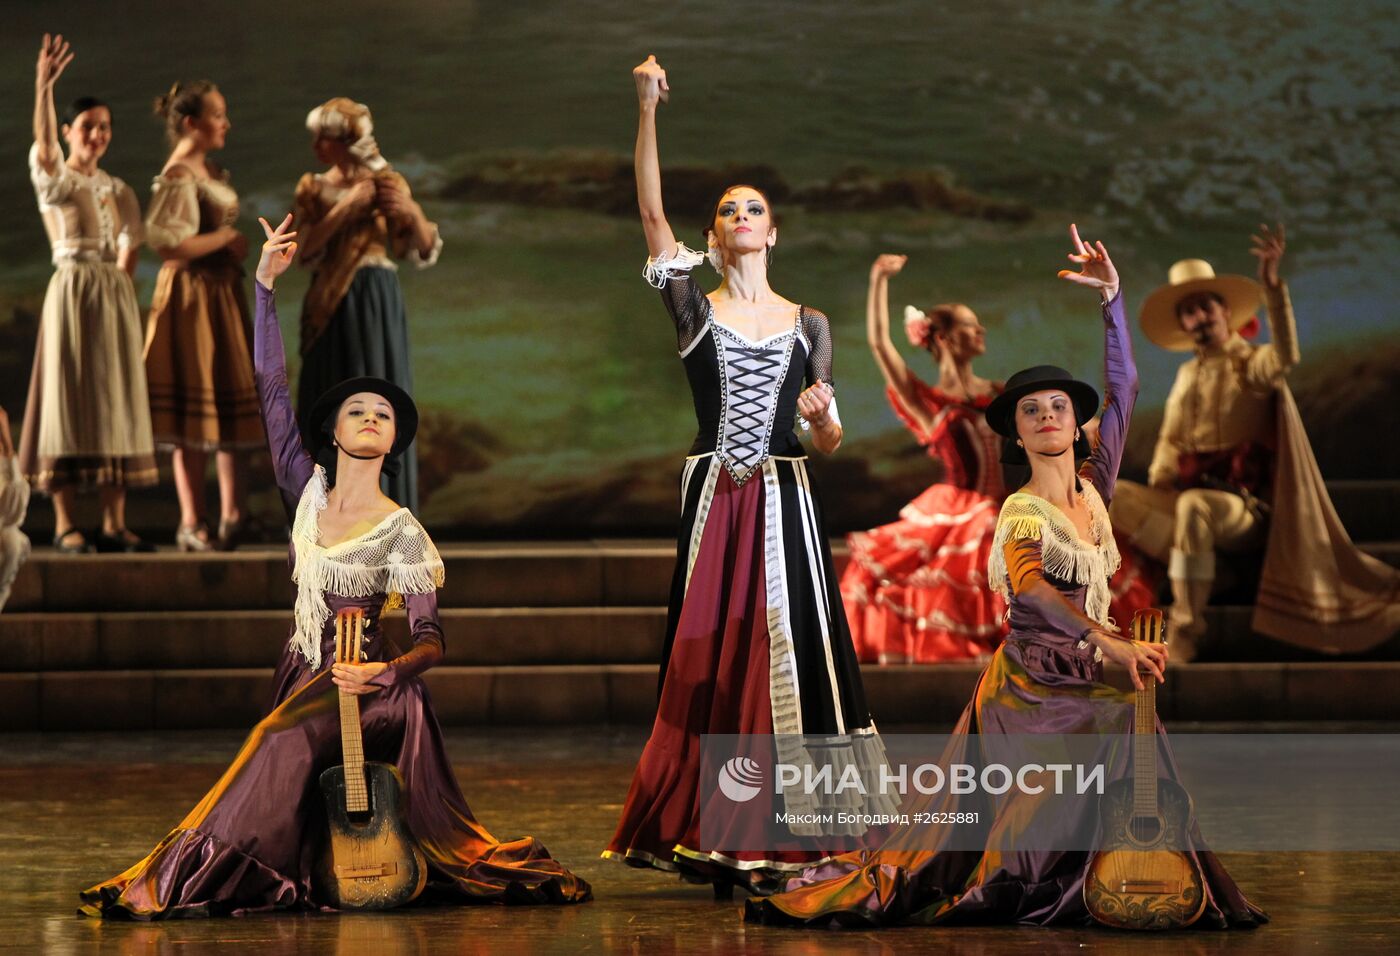 Открытие XXVIII Международного фестиваля классического балета имени Рудольфа Нуриева